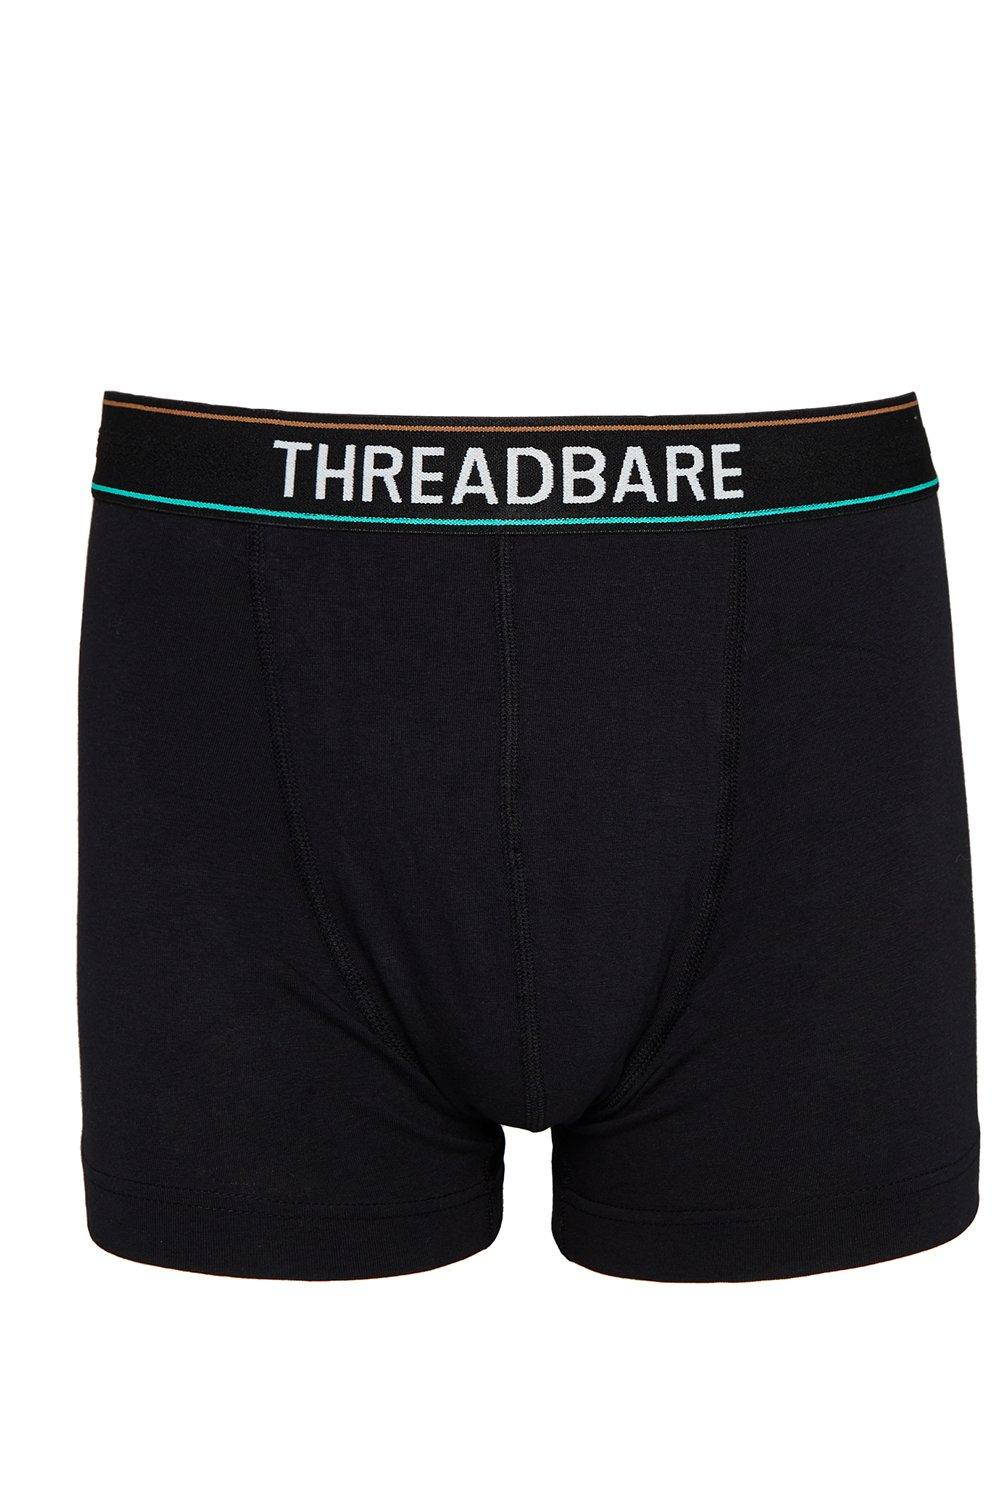 4PK Tommy Hilfiger Men's XXL Size Cotton Stretch Briefs Underwear Blue  Shades, KG Group